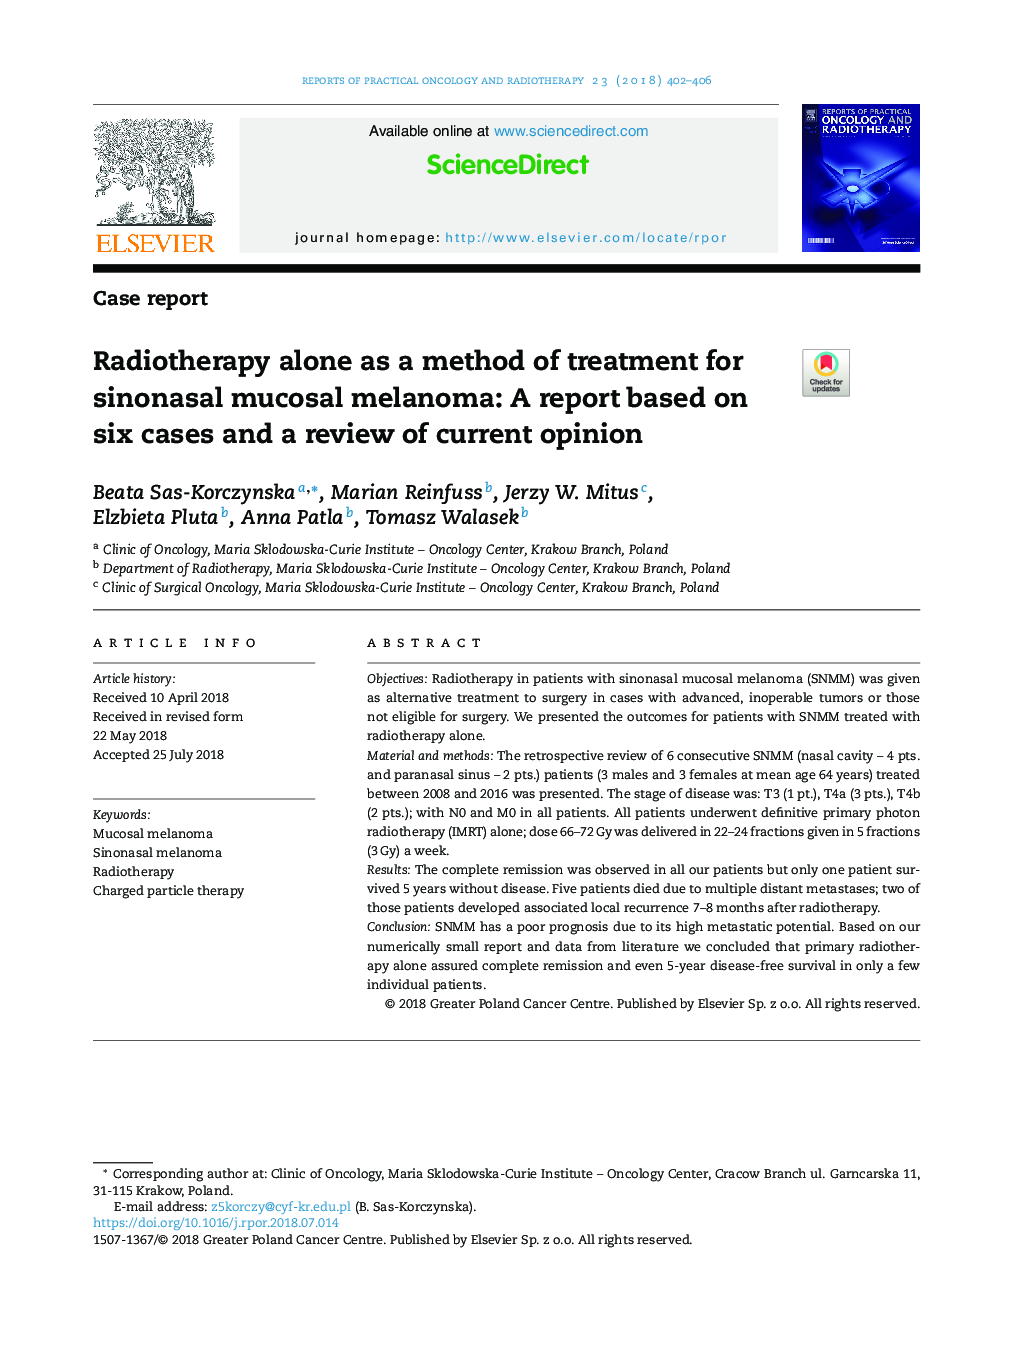 رادیوتراپی به تنهایی به عنوان یک روش درمان برای ملانوم مخاطی سینوس نال: گزارش مبتنی بر شش مورد و بررسی نظر کنونی 